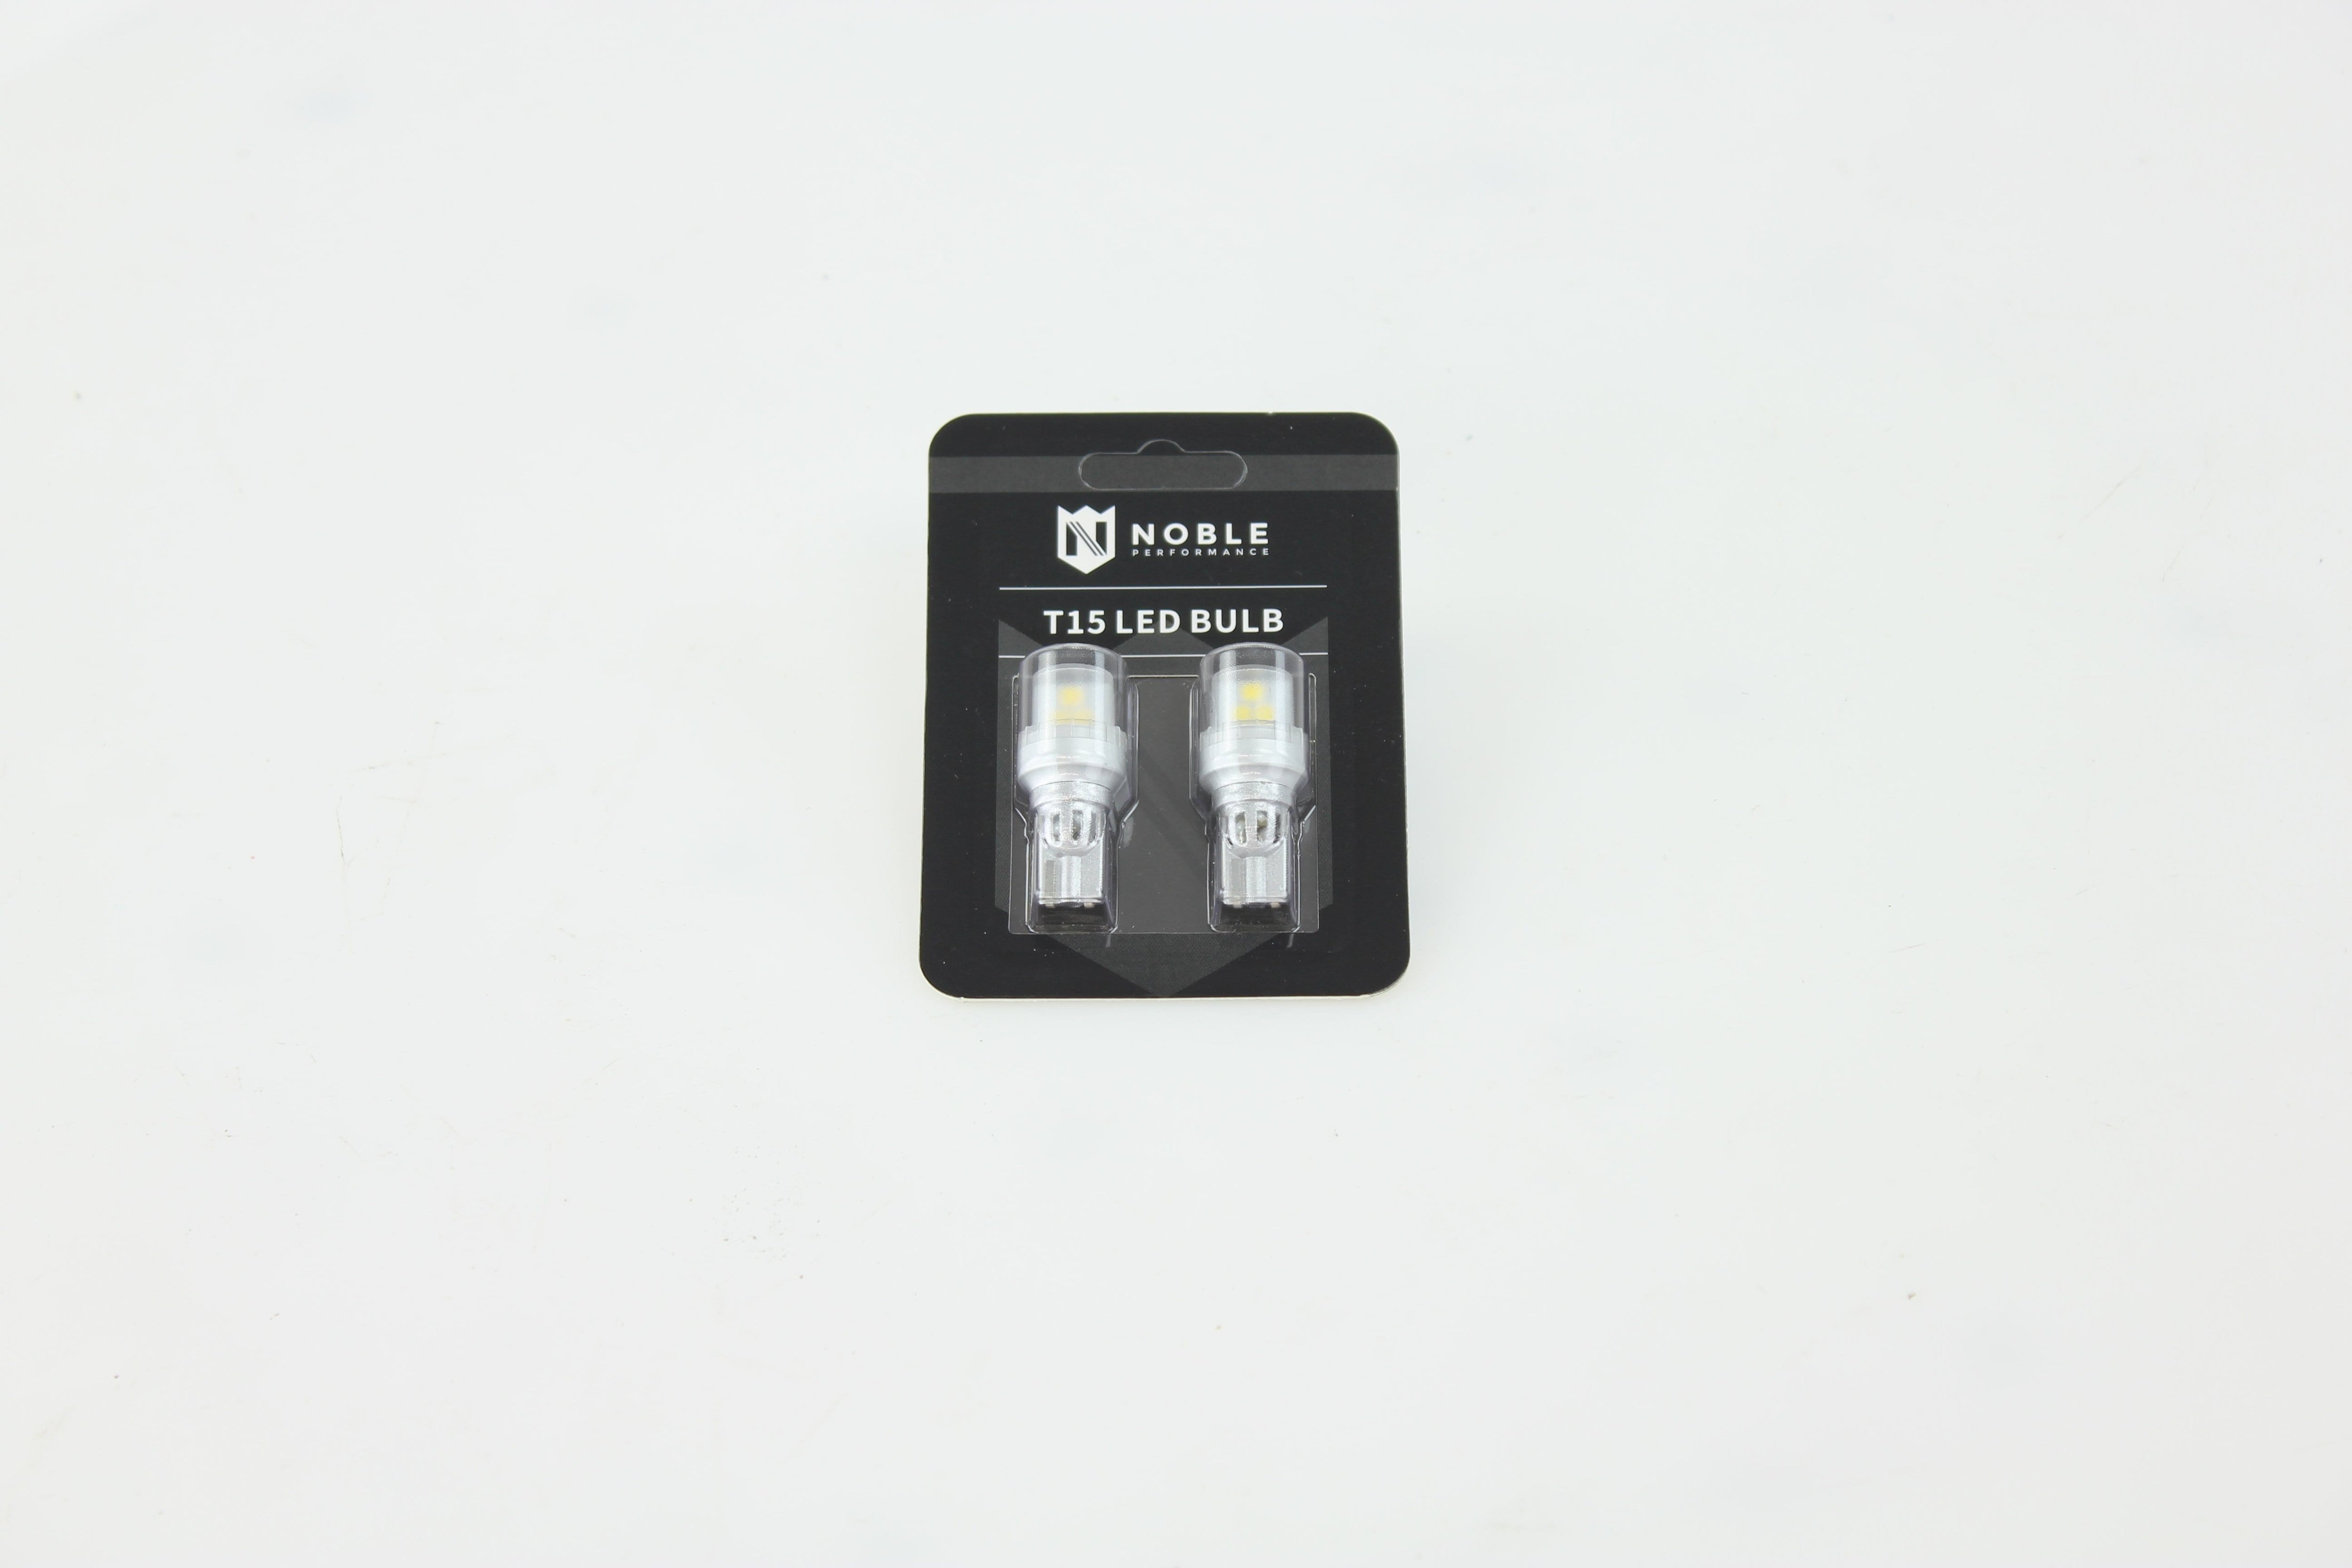 2 Pair White -NAO W5W LED Voiture T10 Ampoule 5W5 Lumière